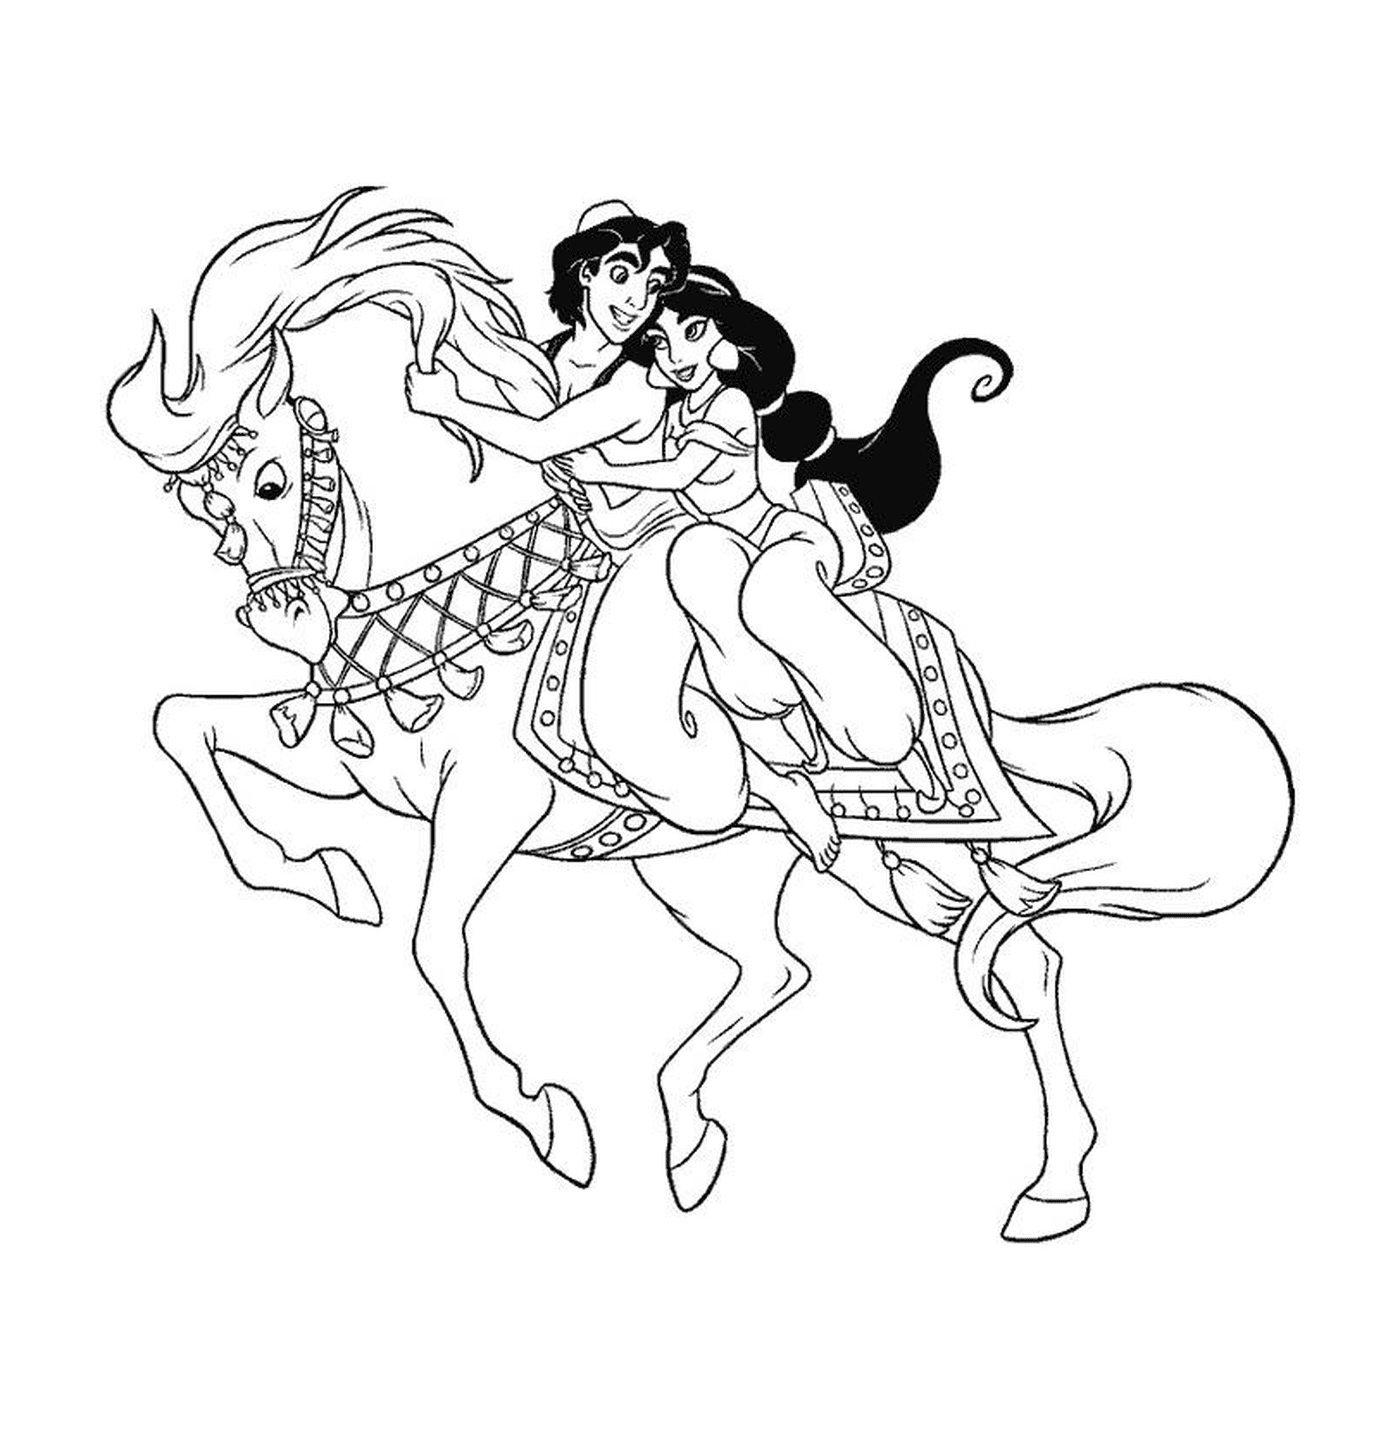  Aladino y Jazmín en un caballo 